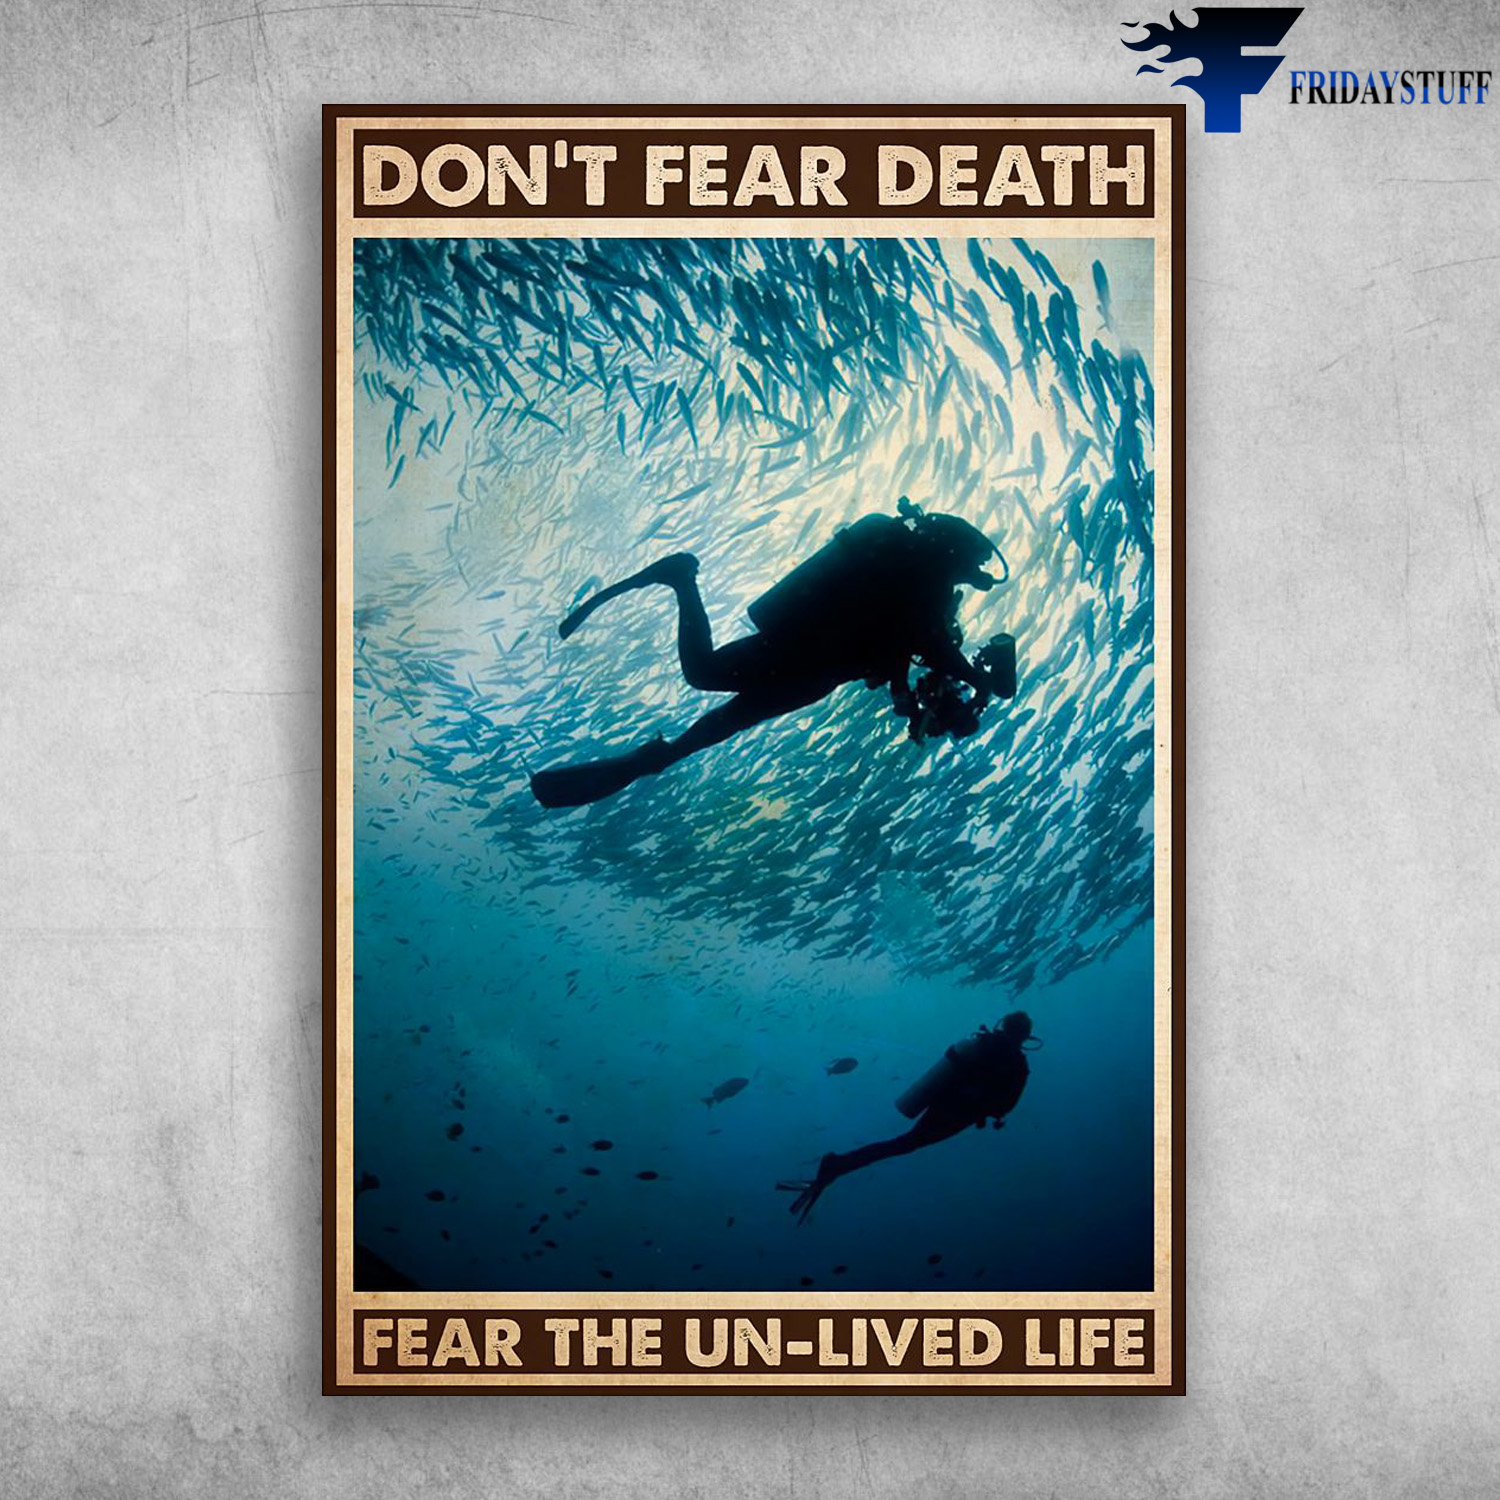 Scuba Diving - Don't Fear Death, Fear The Un-Lived Life